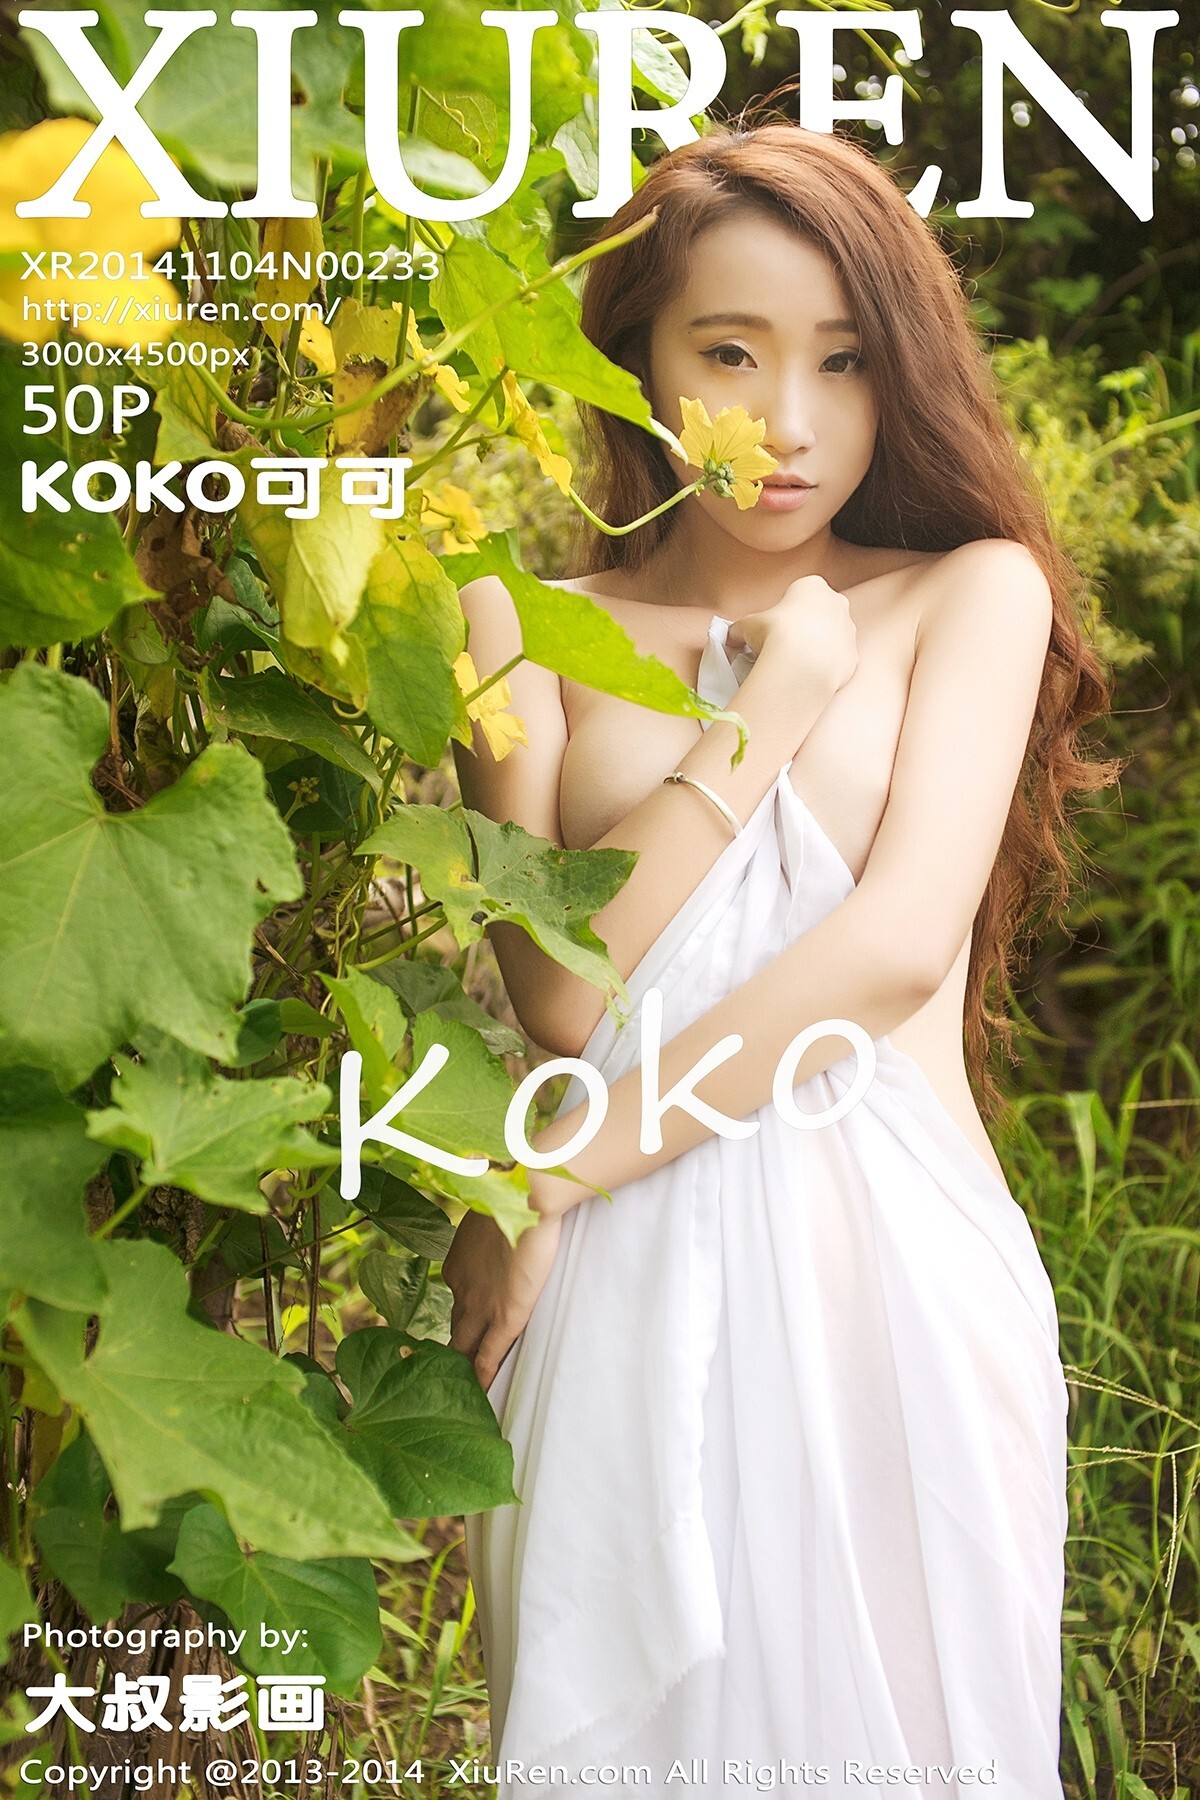 [xiuren] 2014.11.04 No.233 Koko